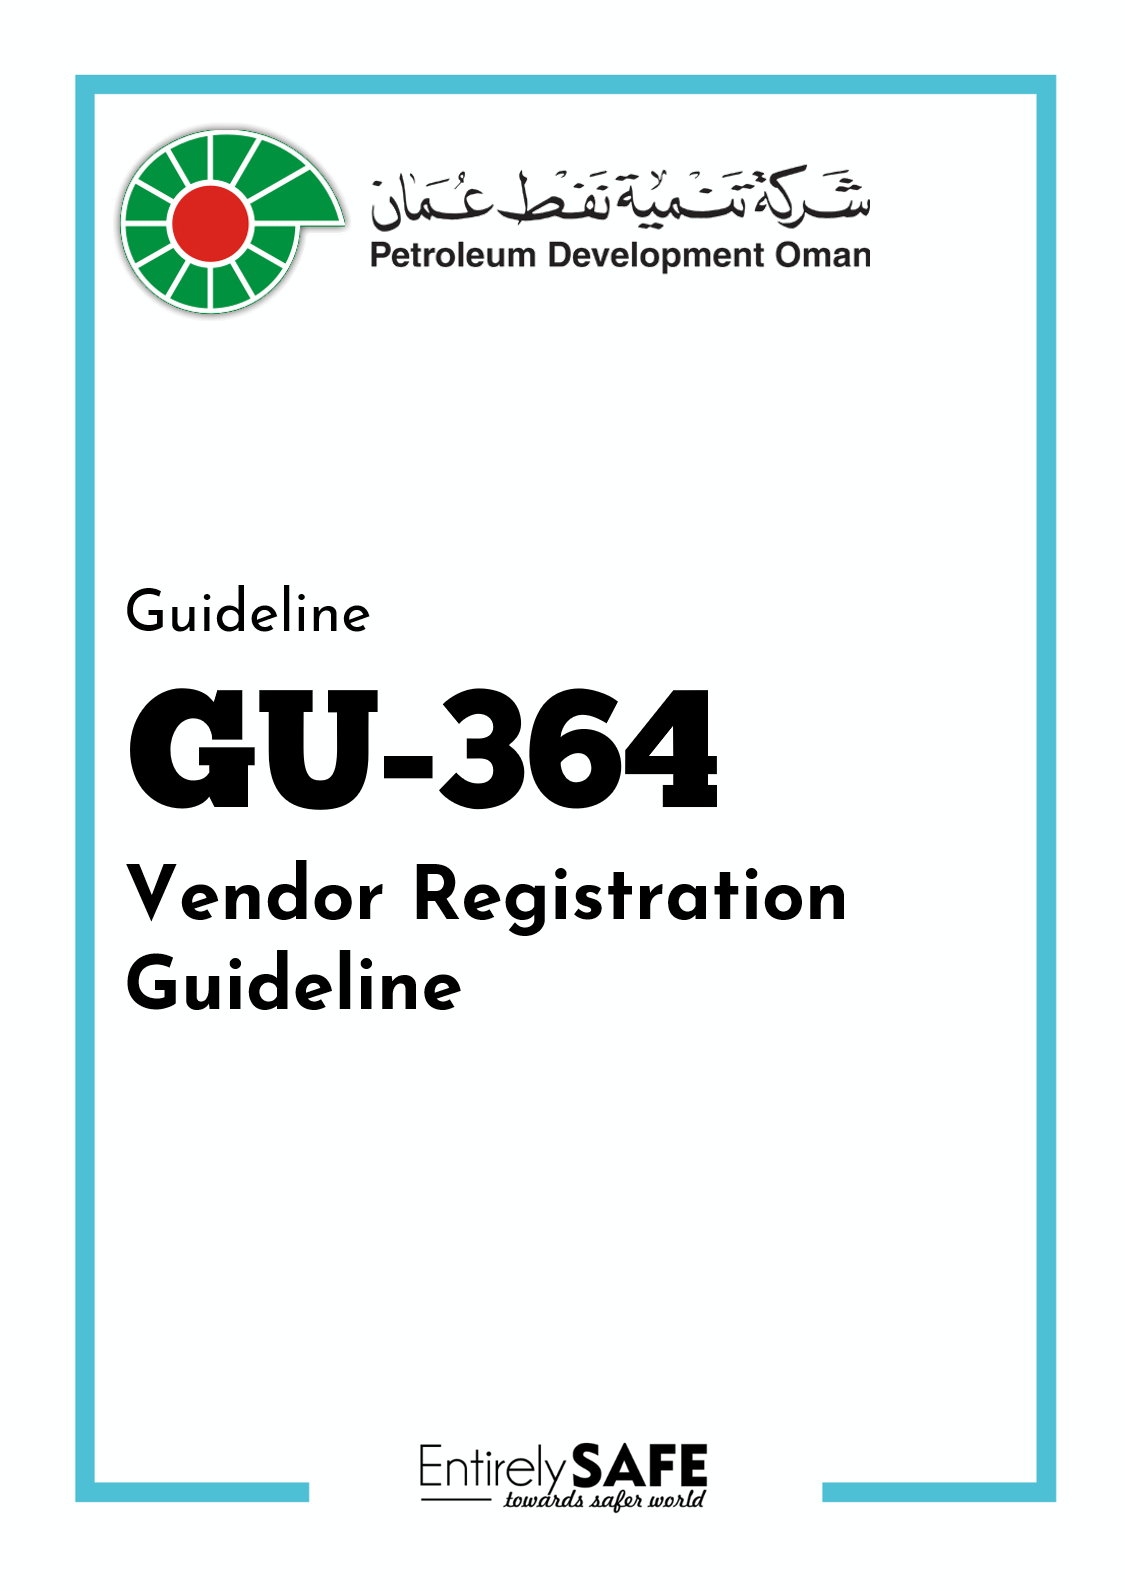 GU-364-Vendor-Registration-Guidelines-PDO